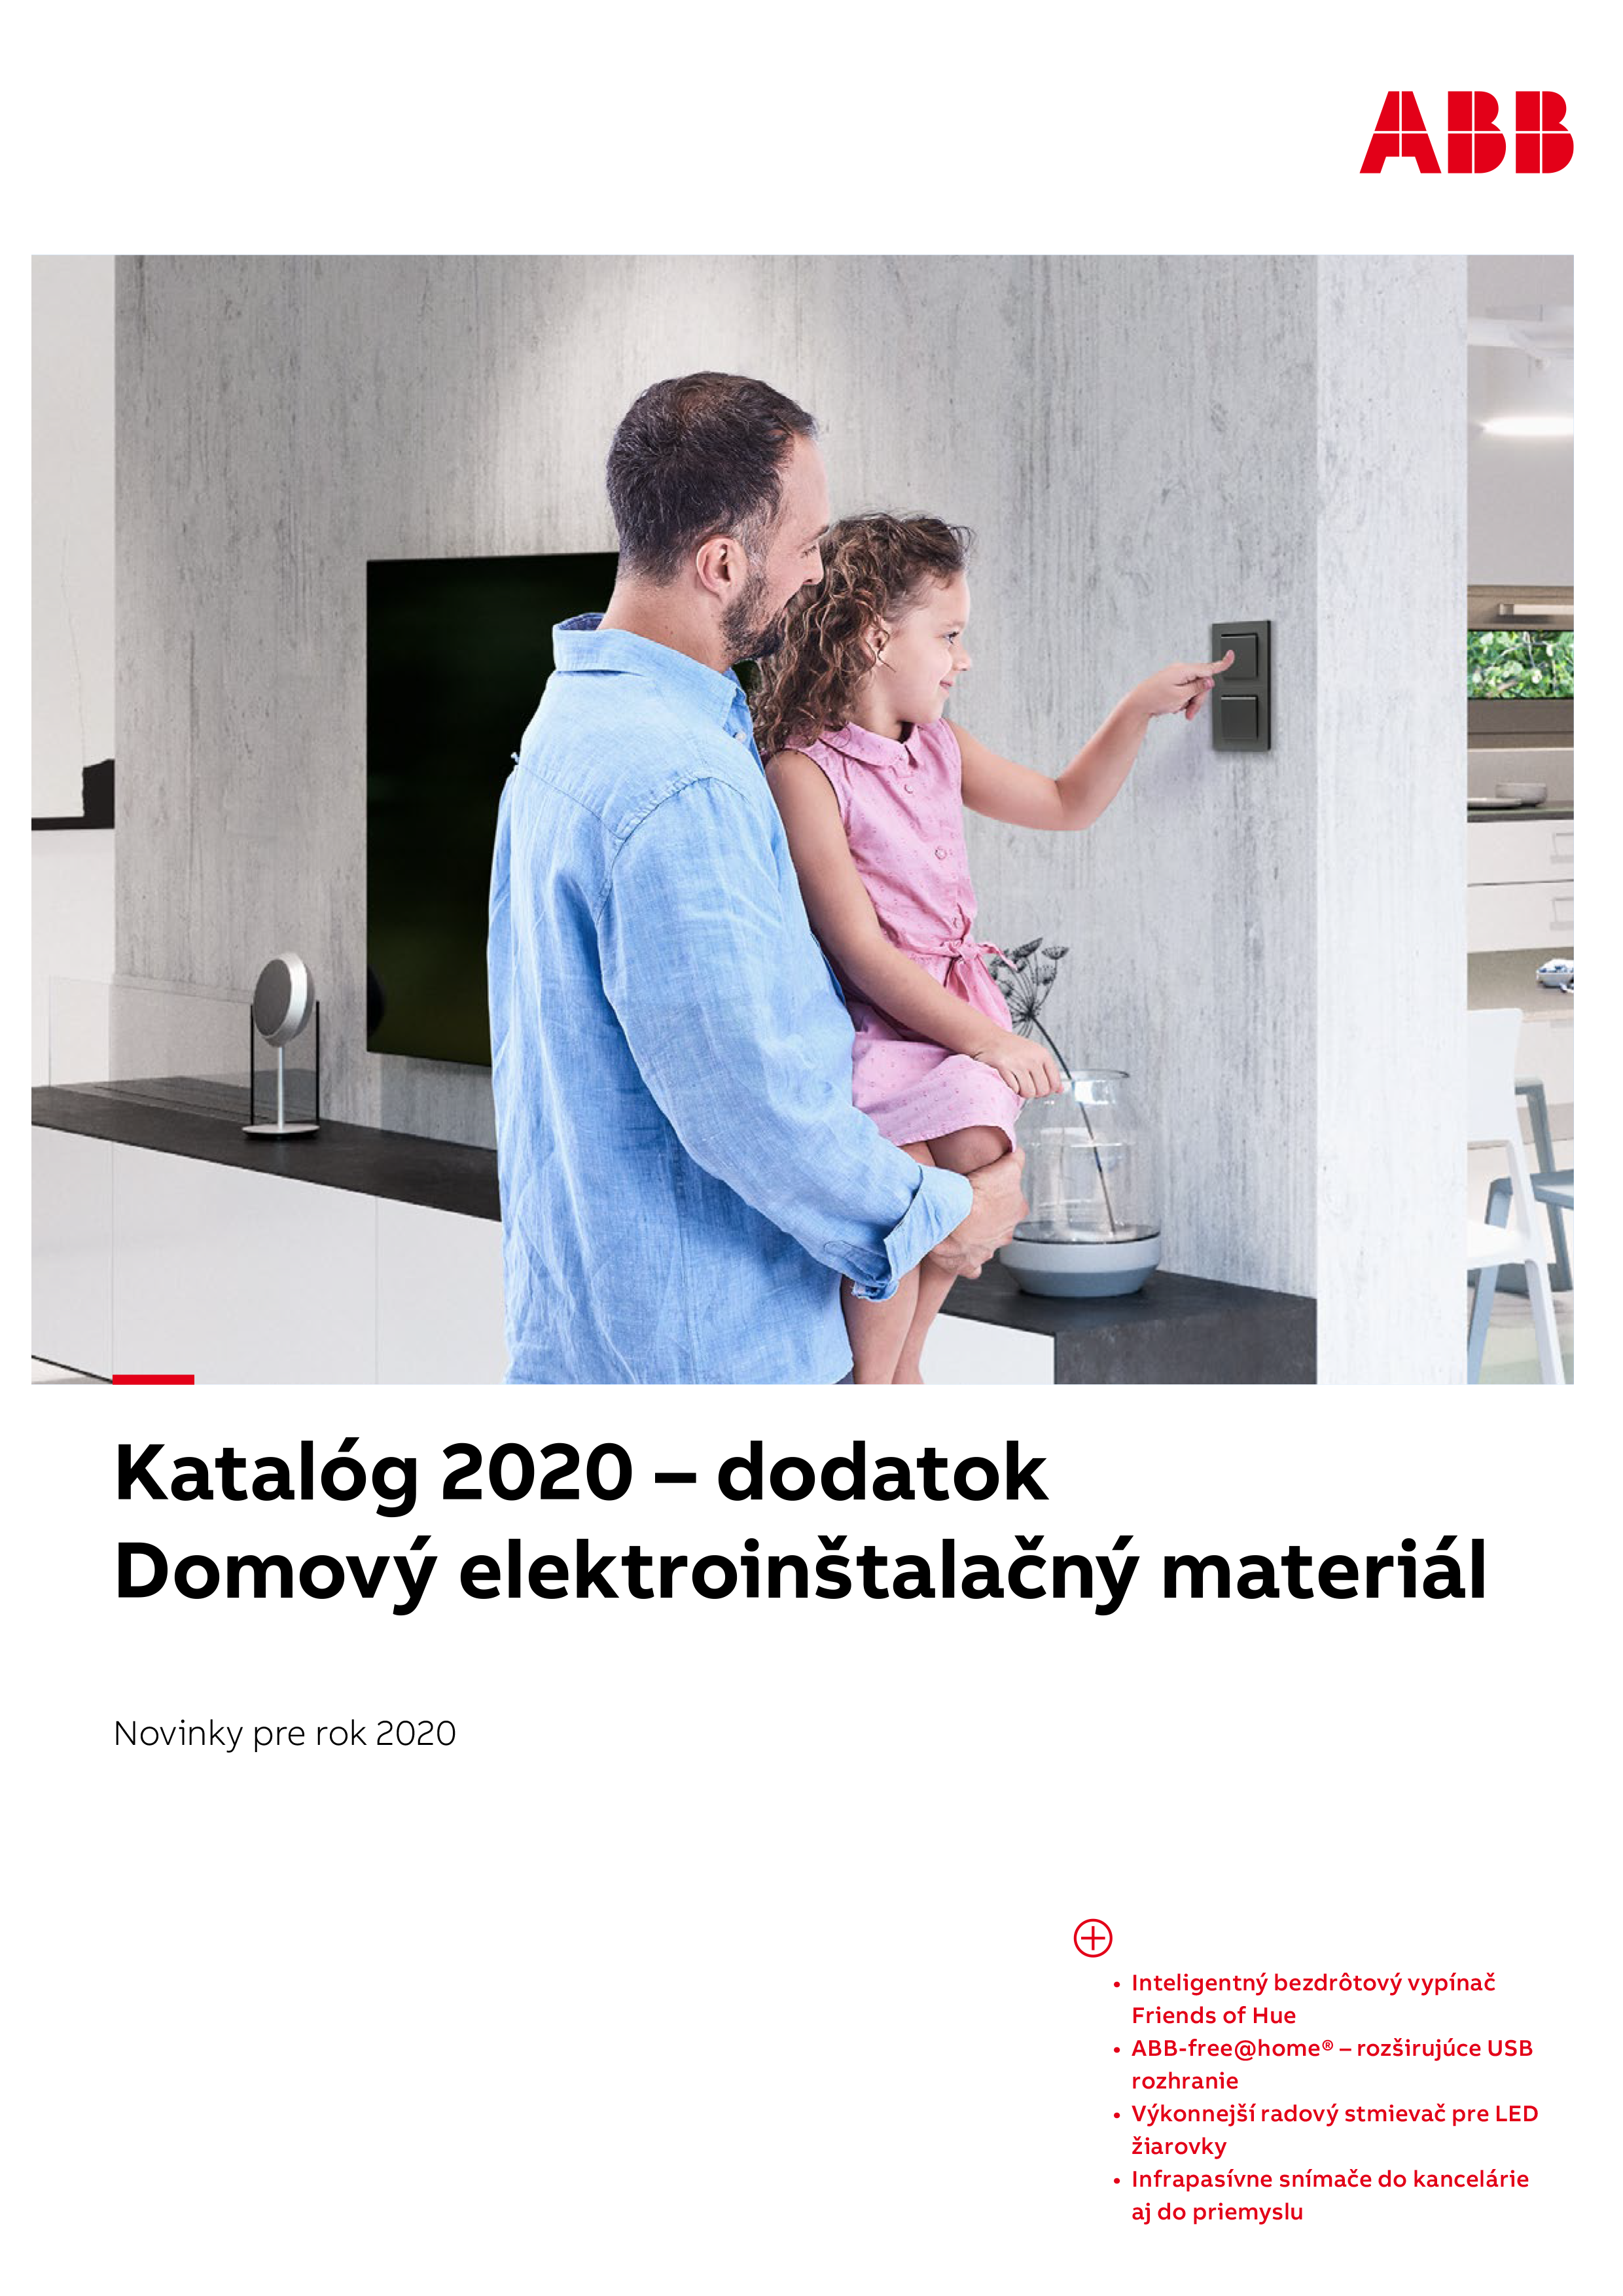 ABB - Domový elektroinštalačný materiál 2020 - dodatok